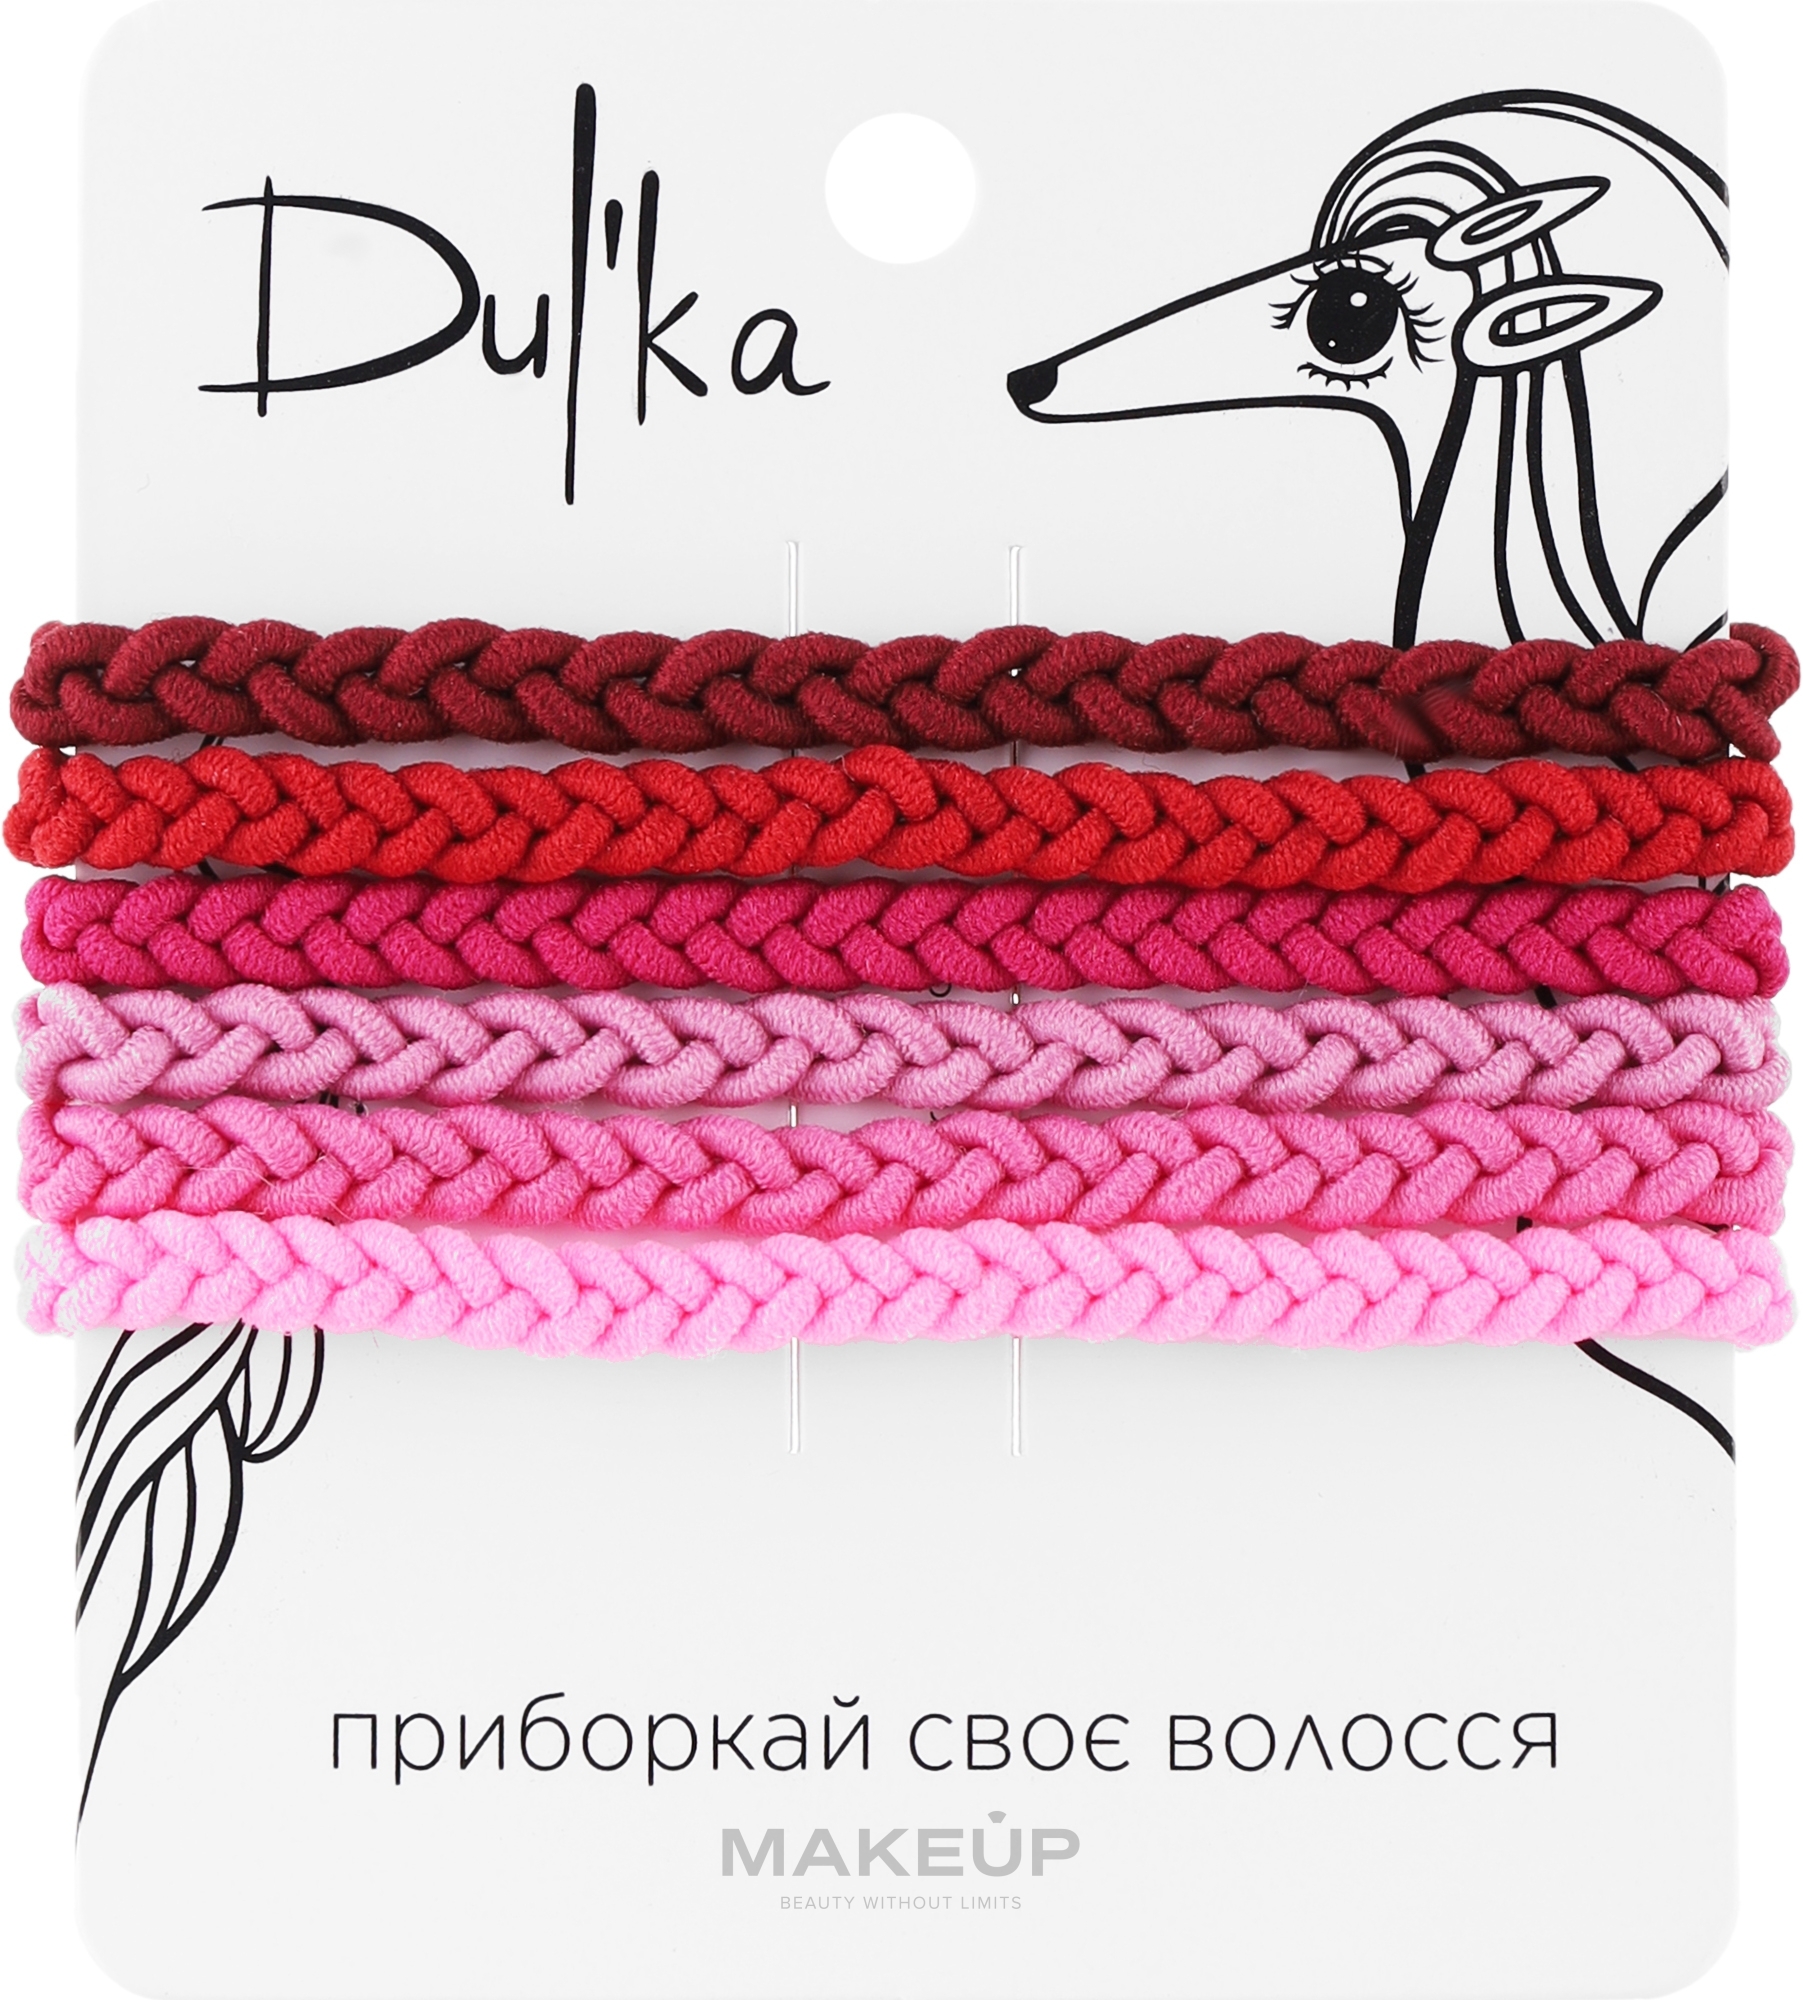 Набор разноцветных резинок для волос UH717722, 6 шт - Dulka  — фото 6шт